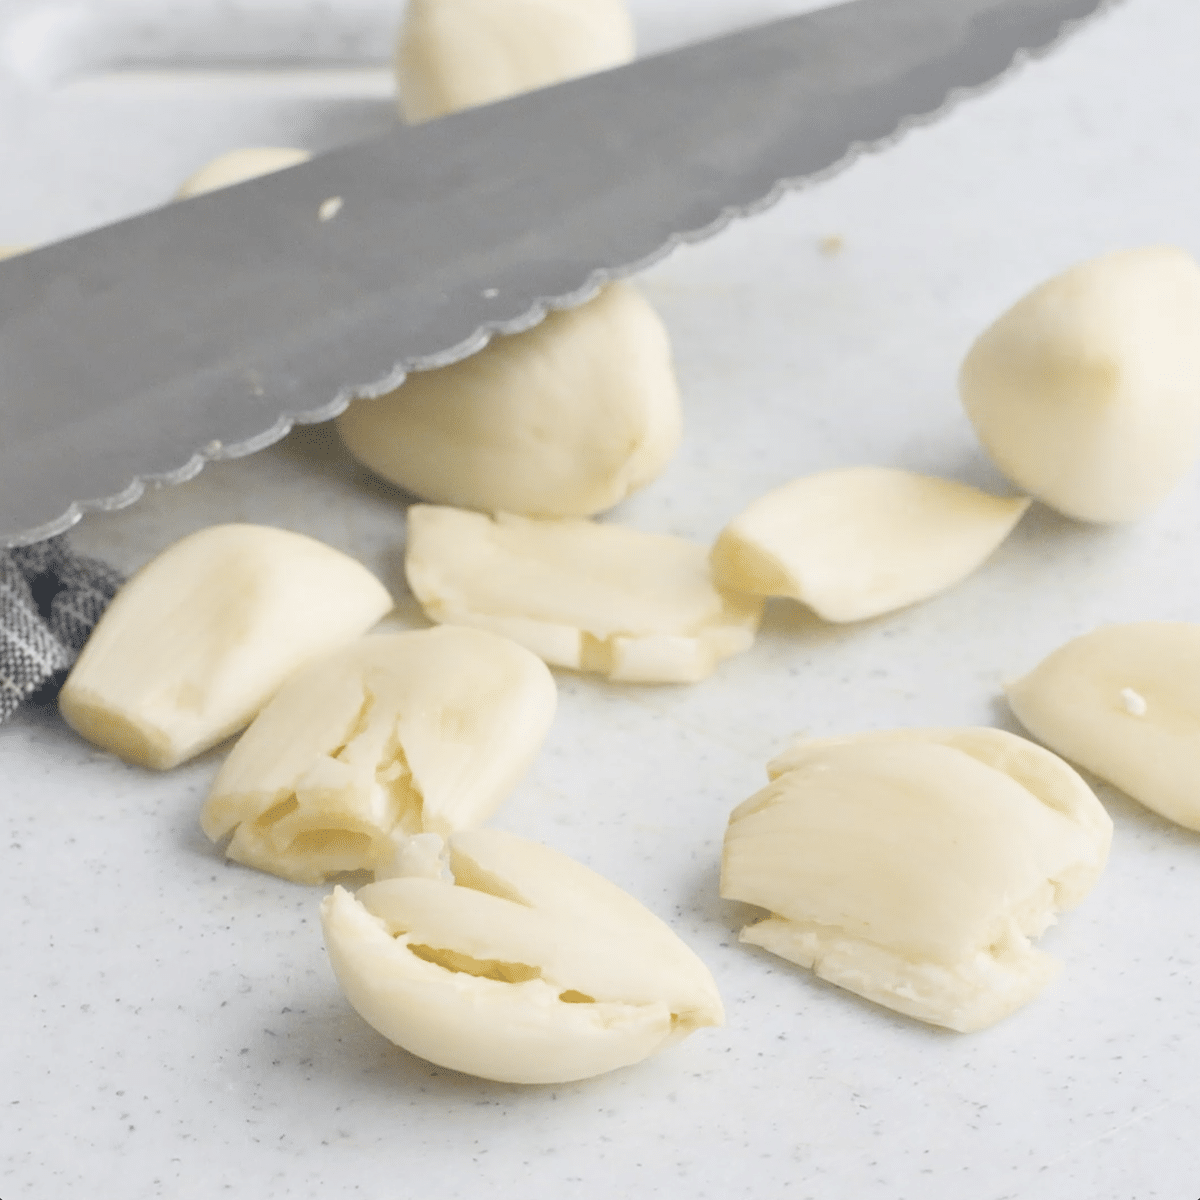 Large knife crushing garlic